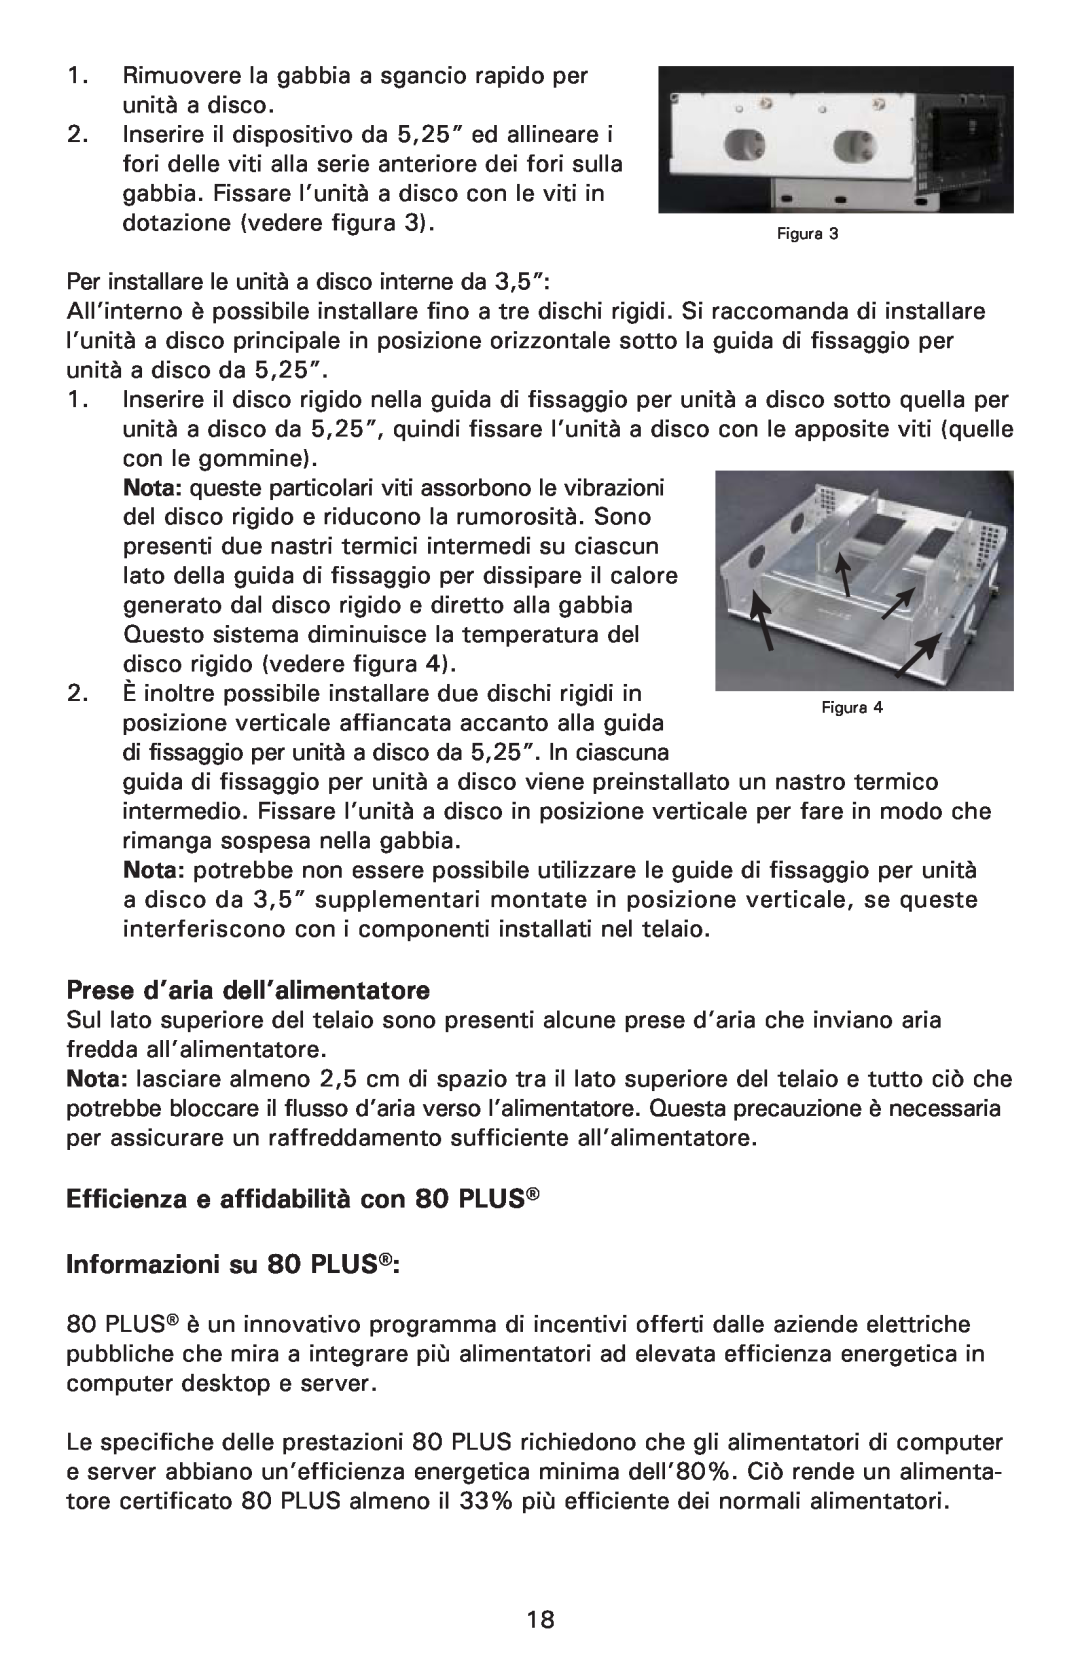 Antec NSK 1380 user manual Prese d’aria dell’alimentatore, Efficienza e affidabilità con 80 PLUS Informazioni su 80 PLUS 